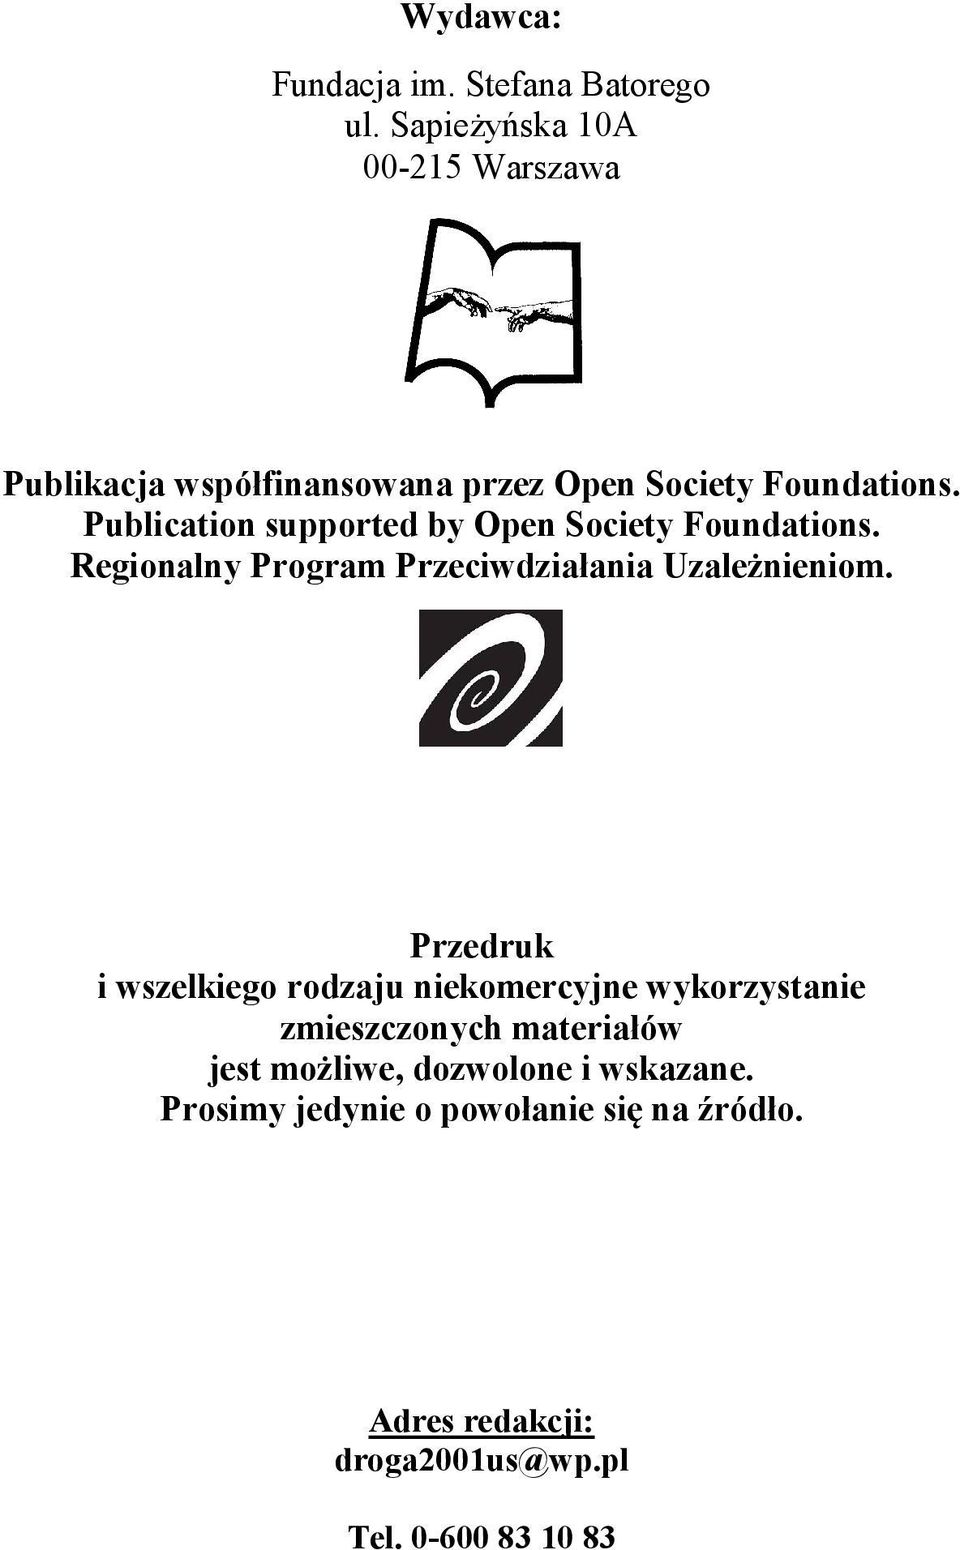 Publication supported by Open Society Foundations. Regionalny Program Przeciwdziałania Uzależnieniom.